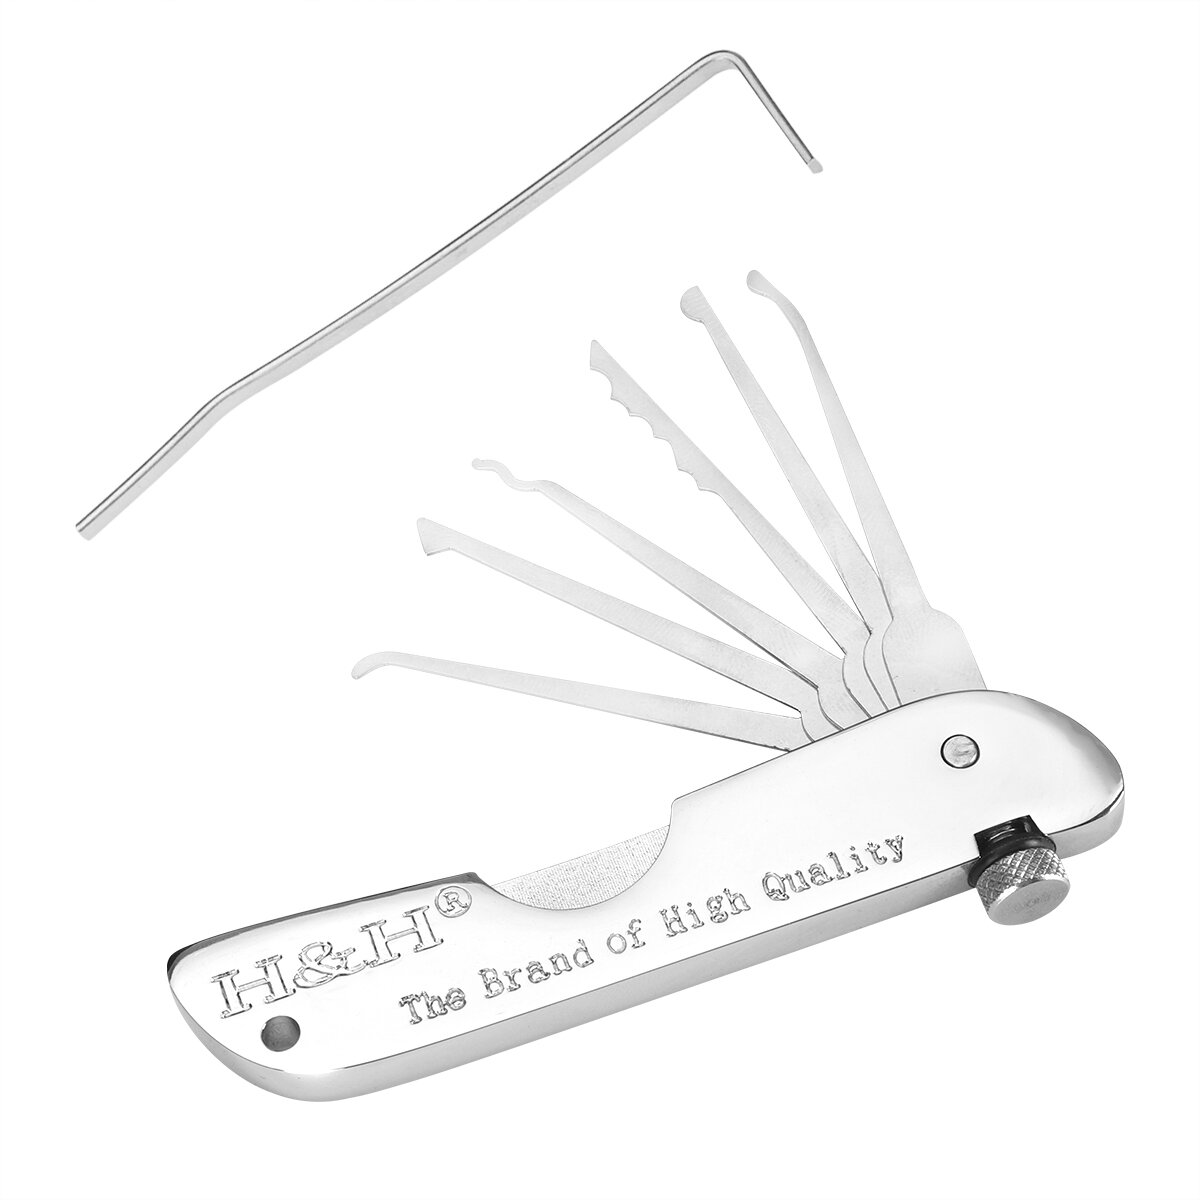 Locksmith Supplies Premium Hand Tools Set Precision Engineered Picks Multi-Head Opening Tool Ultimate Lock Kit COD